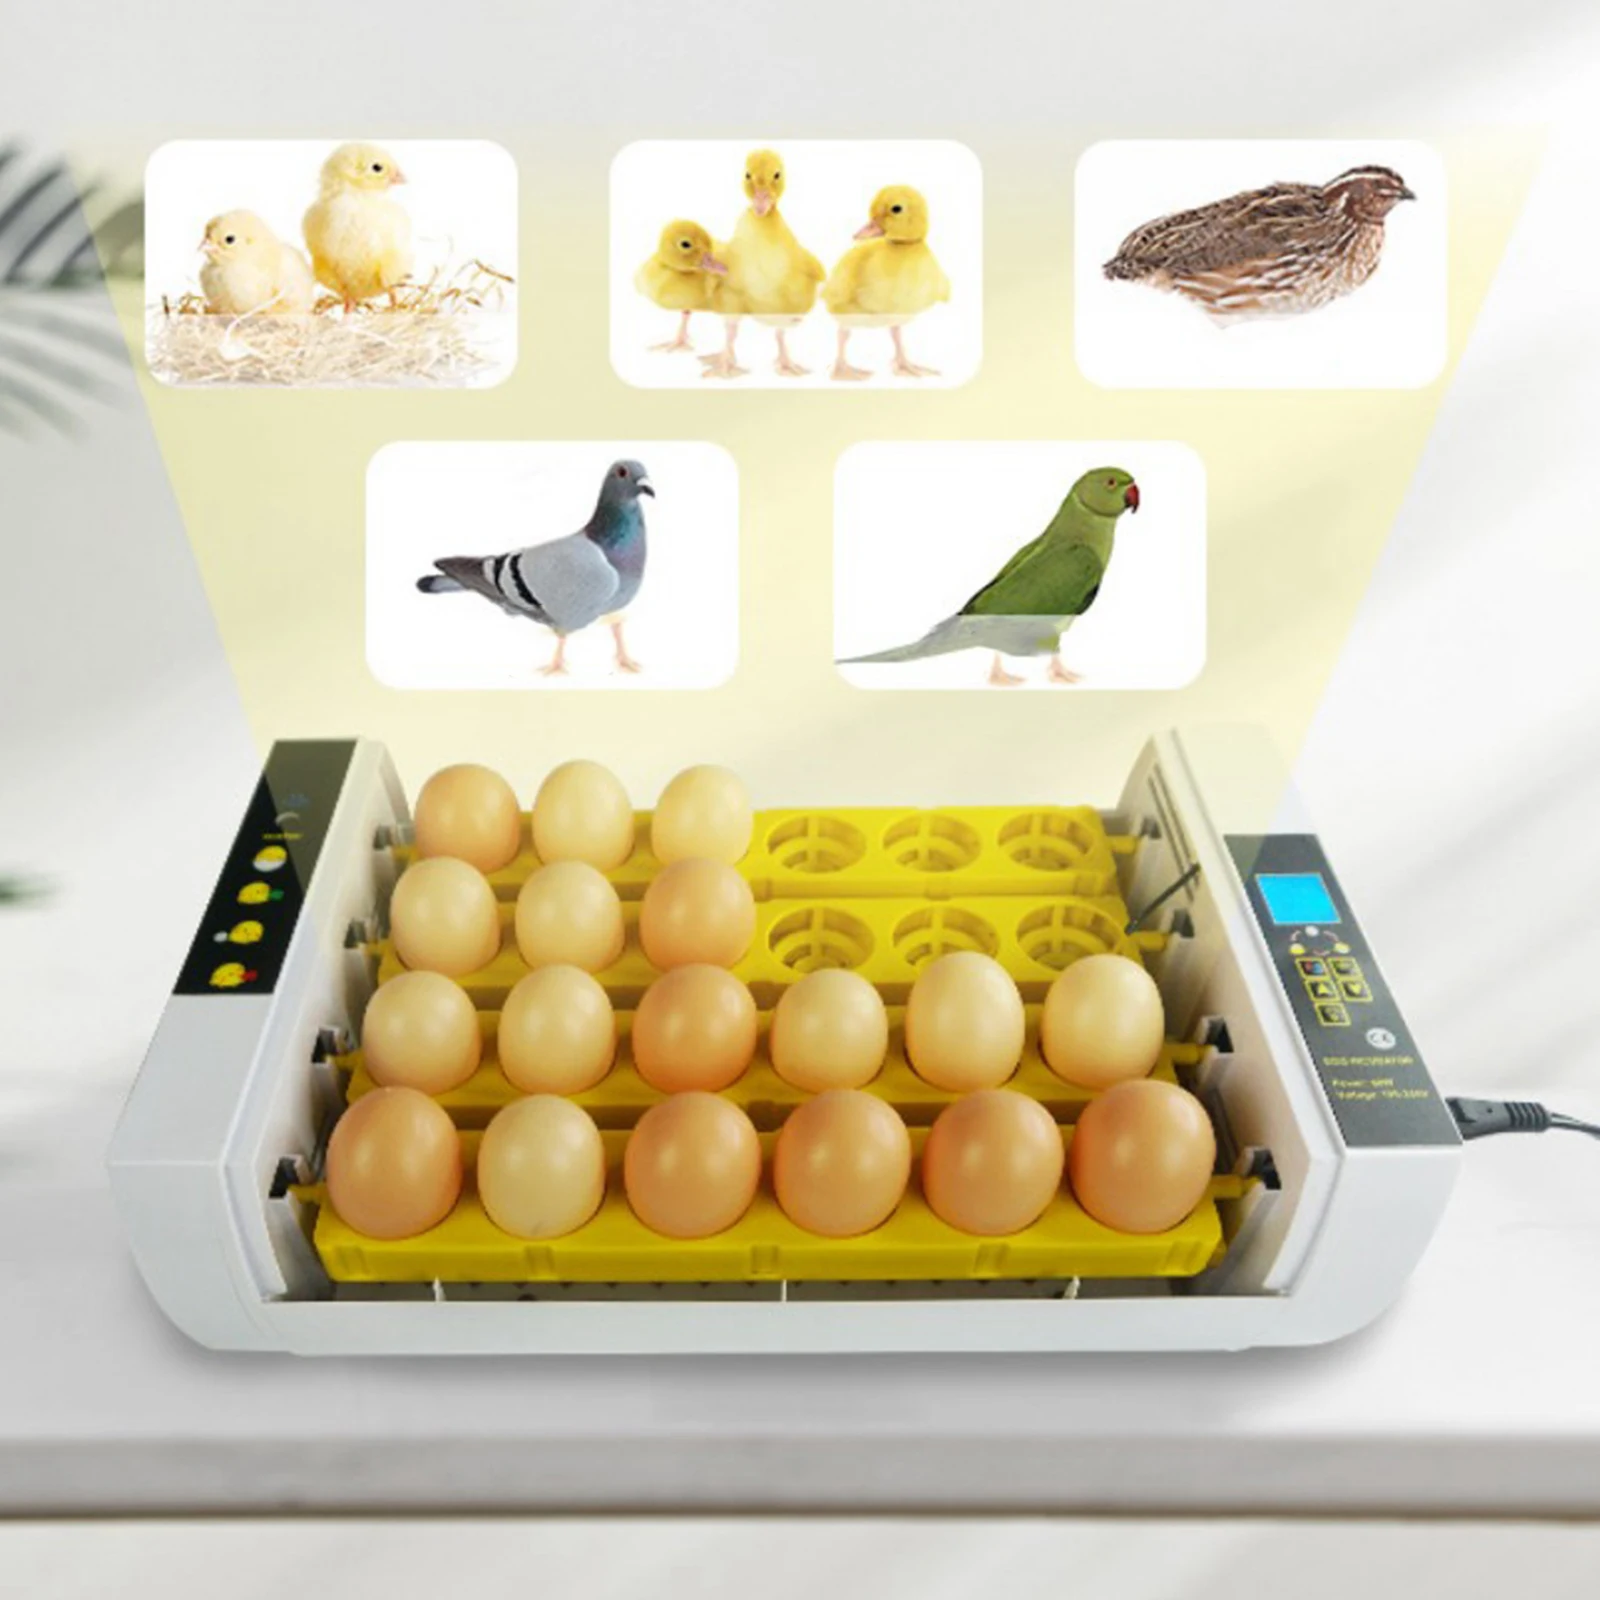 

24 яичные инкубаторы для куриного яйца инкубатор машина птица перепелиное яйцо Брудер для инкубационных курица Гусь утка